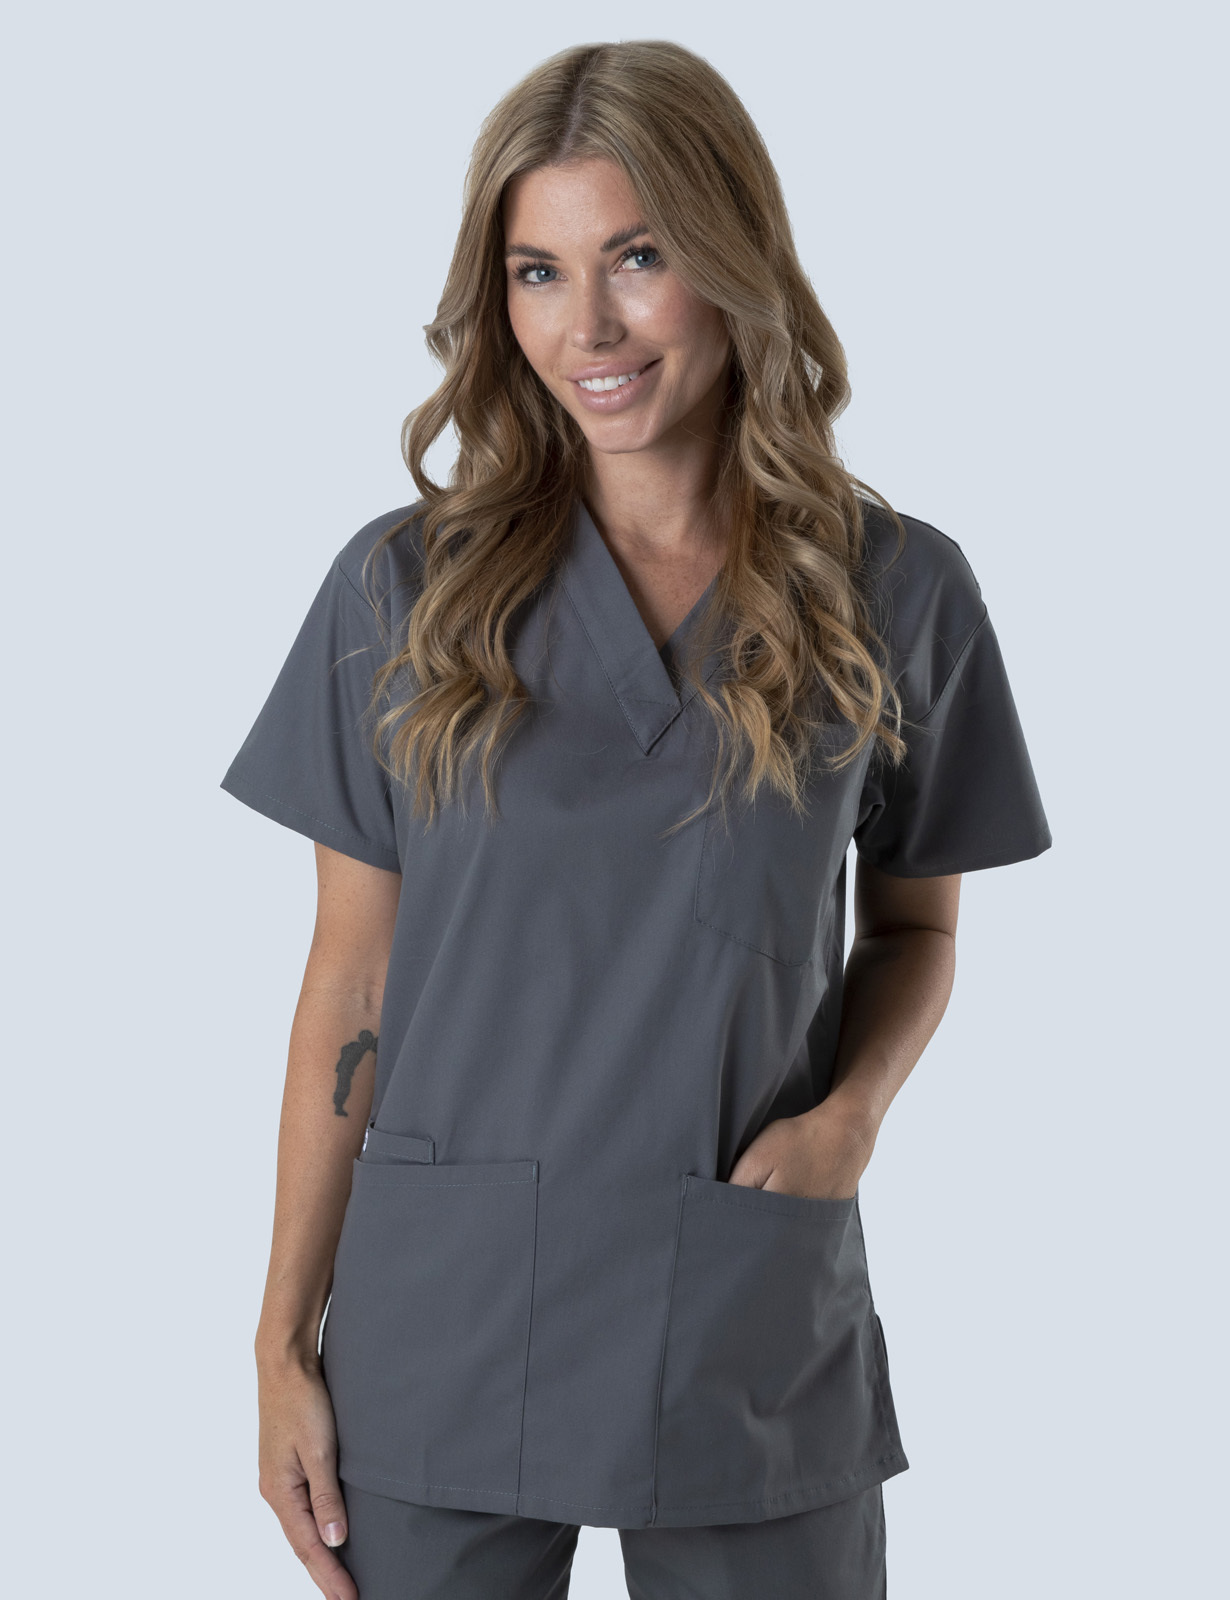 Queensland Children's Hospital Emergency Department Doctor Uniform Top  Bundle (4 Pocket Top in Steel Grey  incl Logos)